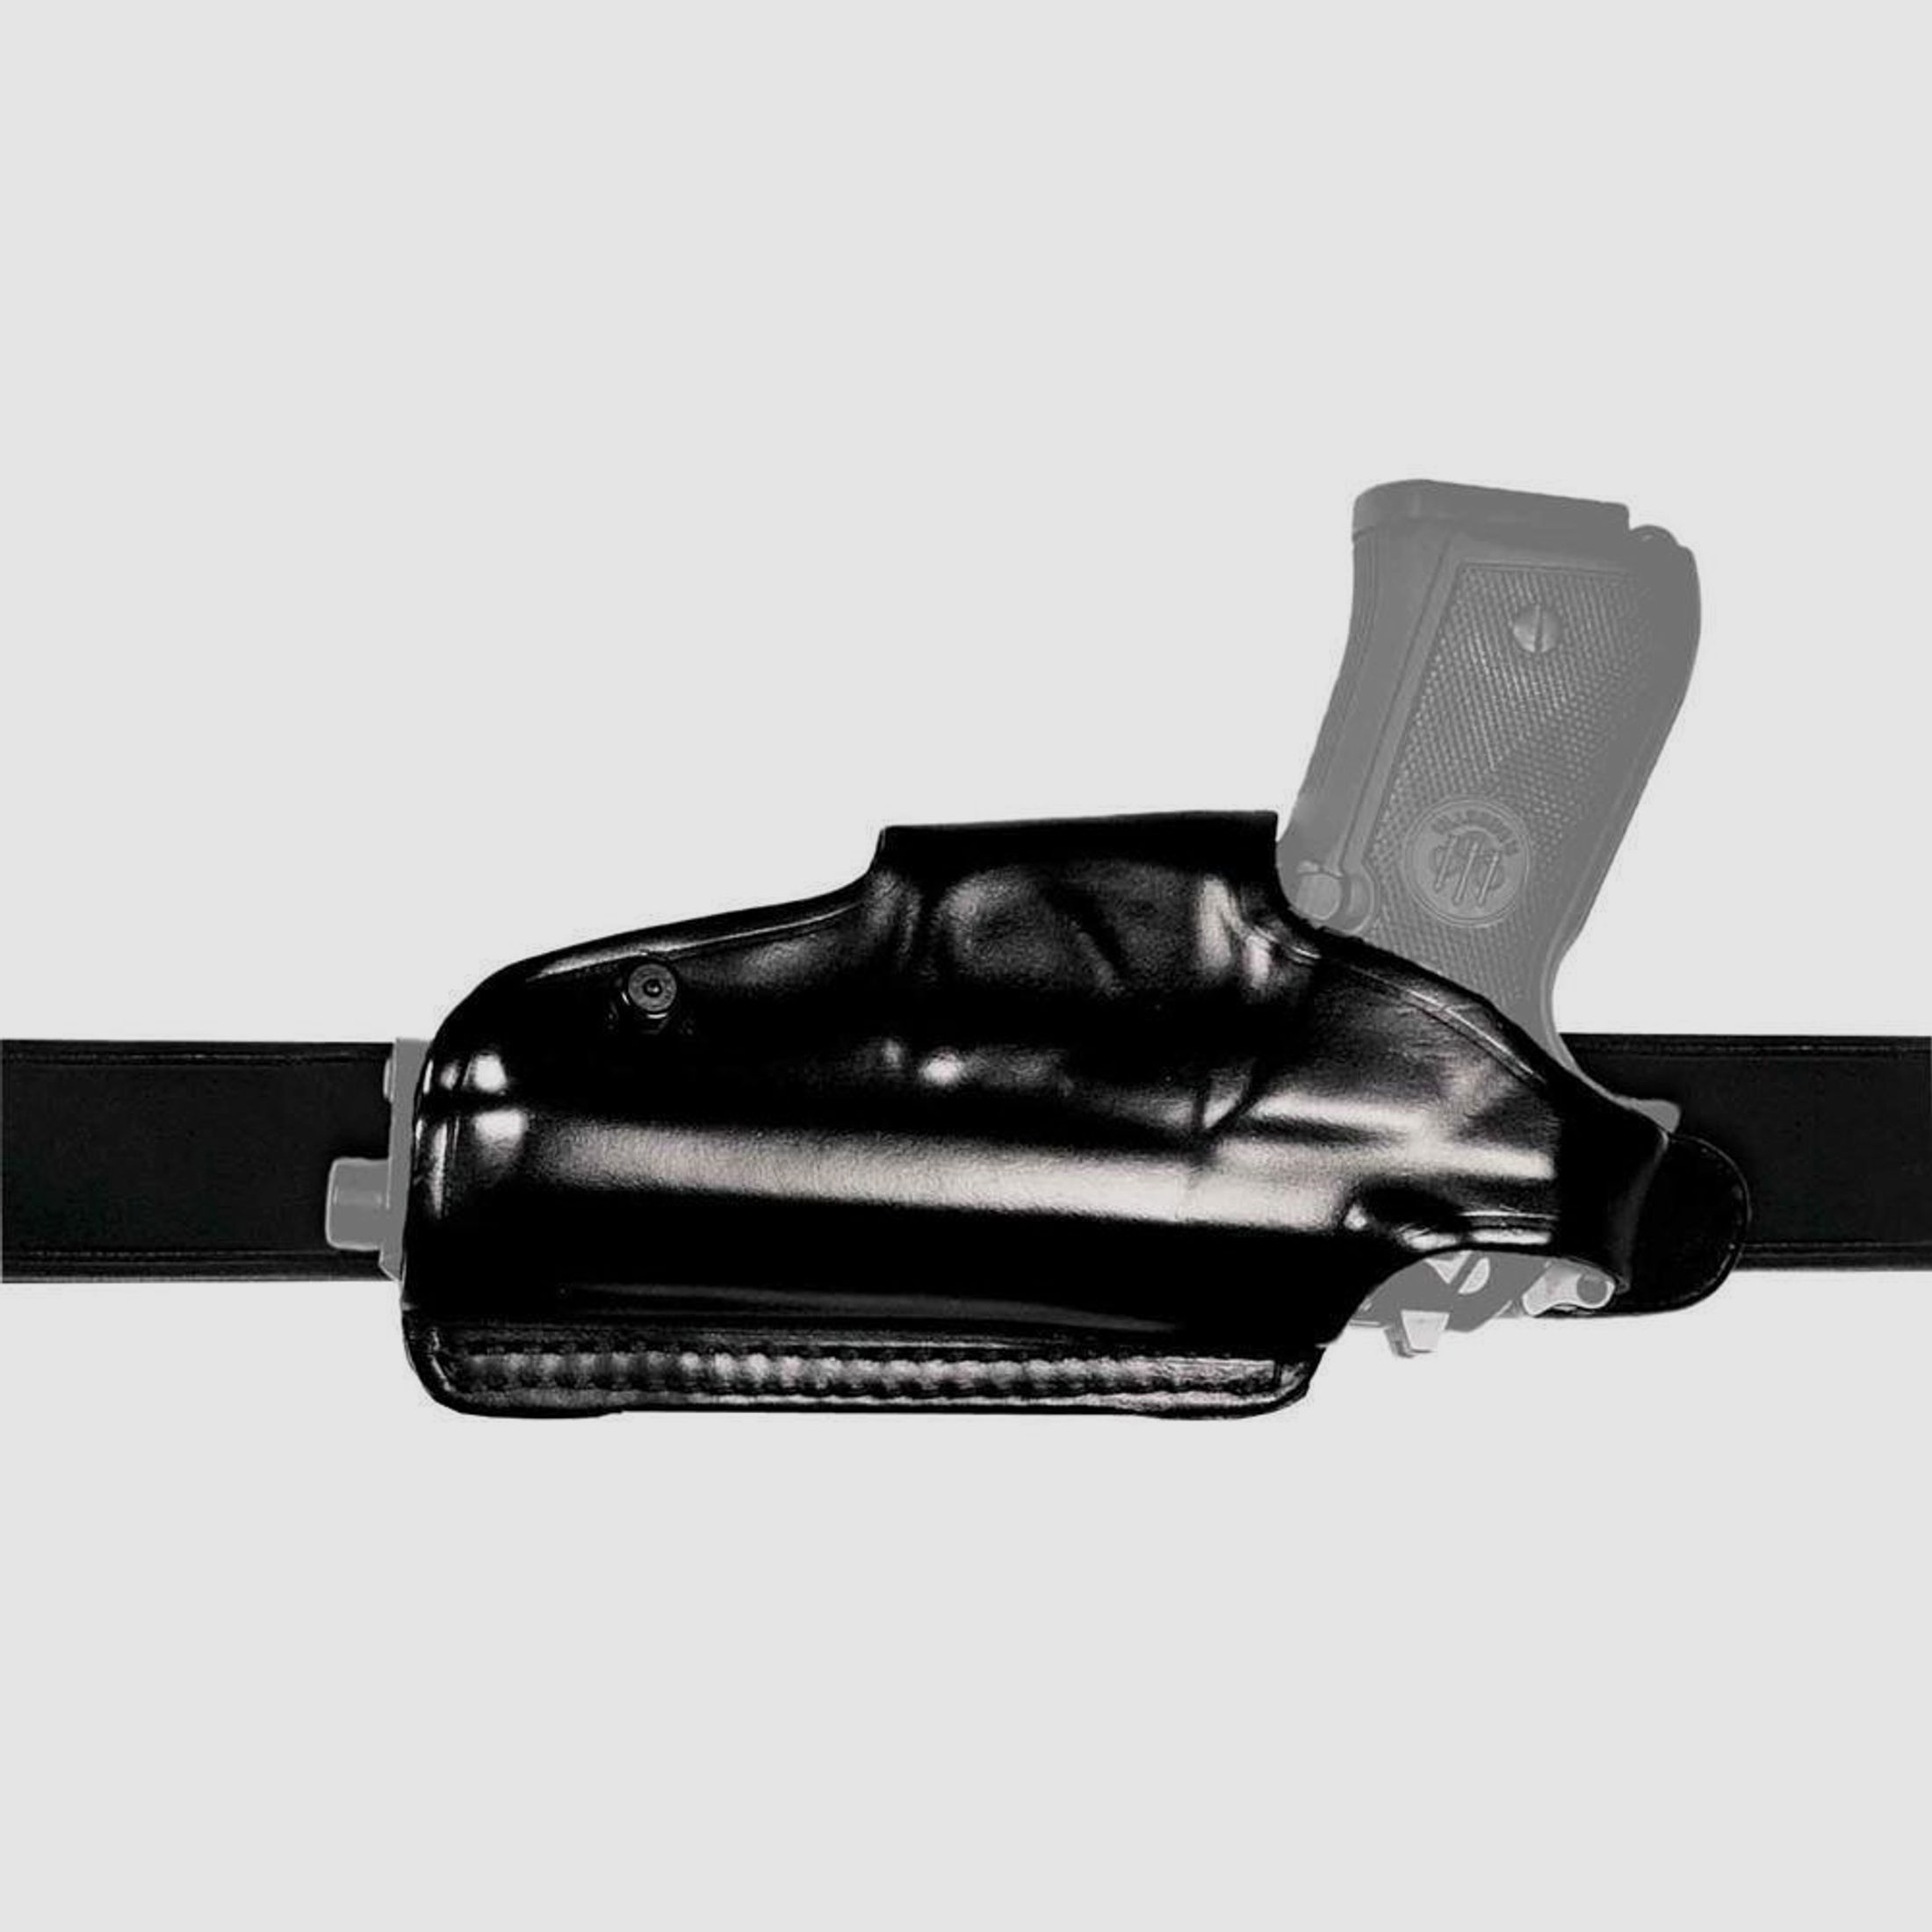 Mehrzweck-Schulterholster/Gürtelholster "Miami 2" Walther P99/P99Q/PPQ/PPQ M2 Braun Linkshänder